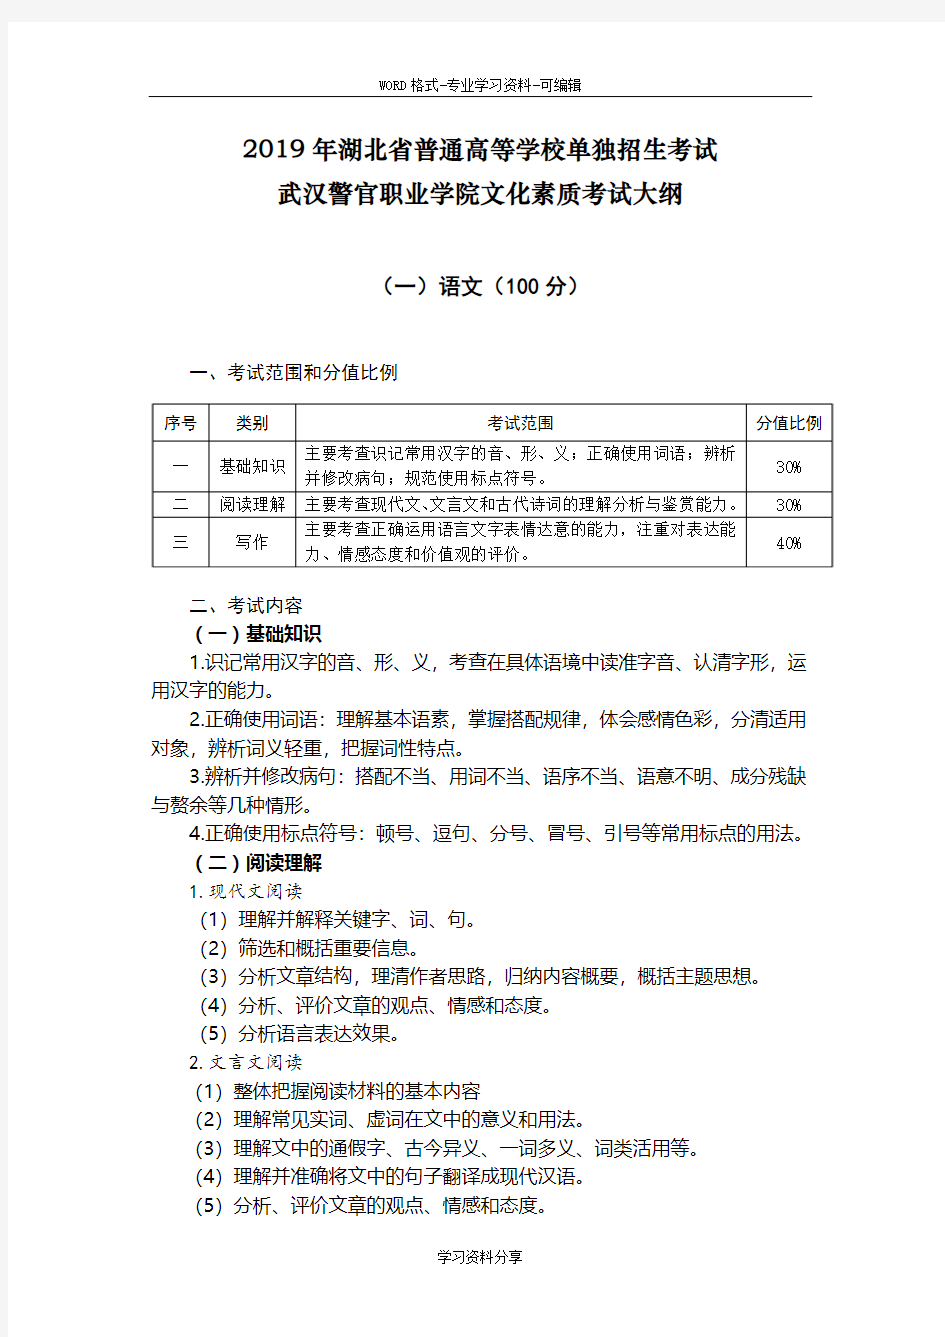 2019年湖北省普通高等学校单独招生考试